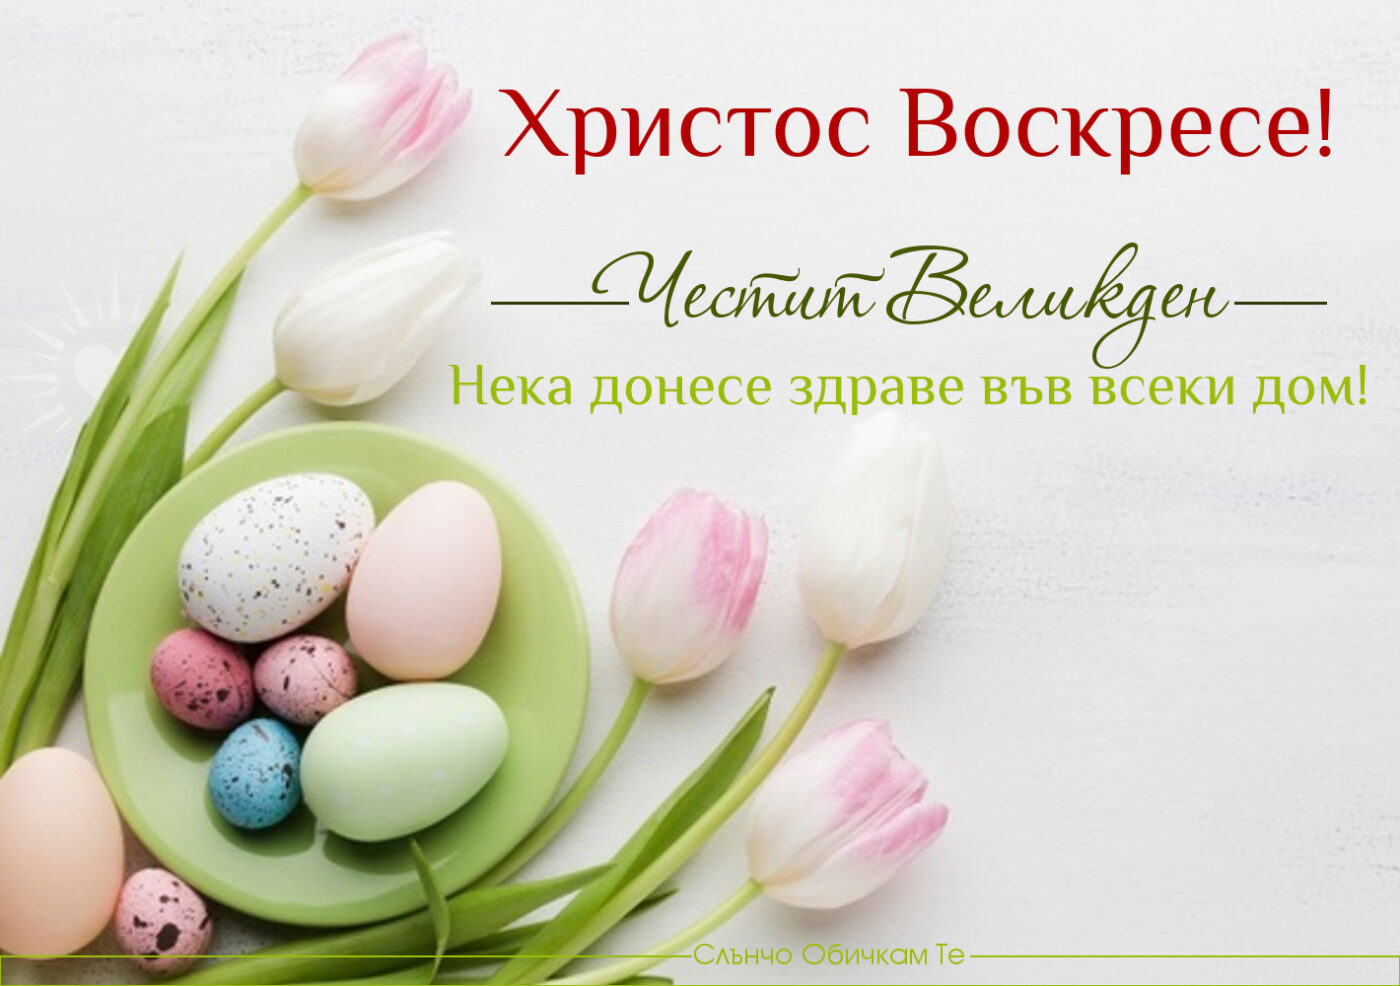 Христос Воскресе! Честит великден - Нека донесе здраве във всеки дом! - картички за великден, великденски яйца, цветя